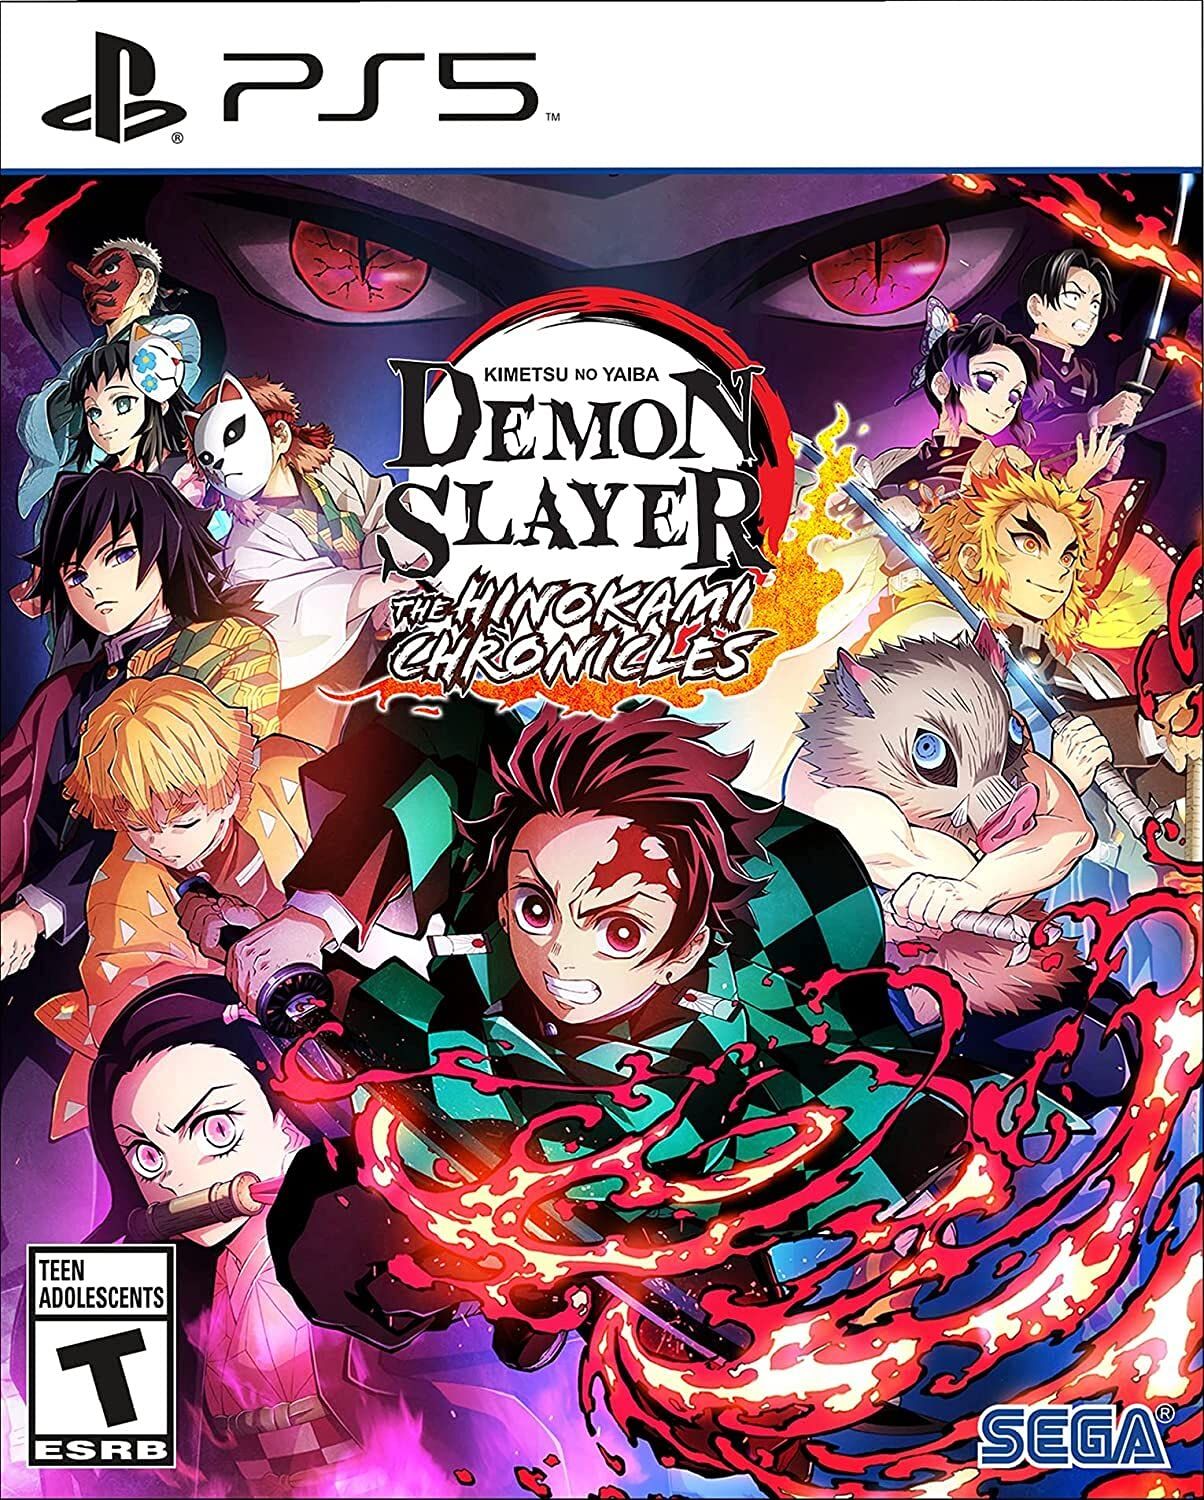 capa do jogo demonslayer com personagens famosos 